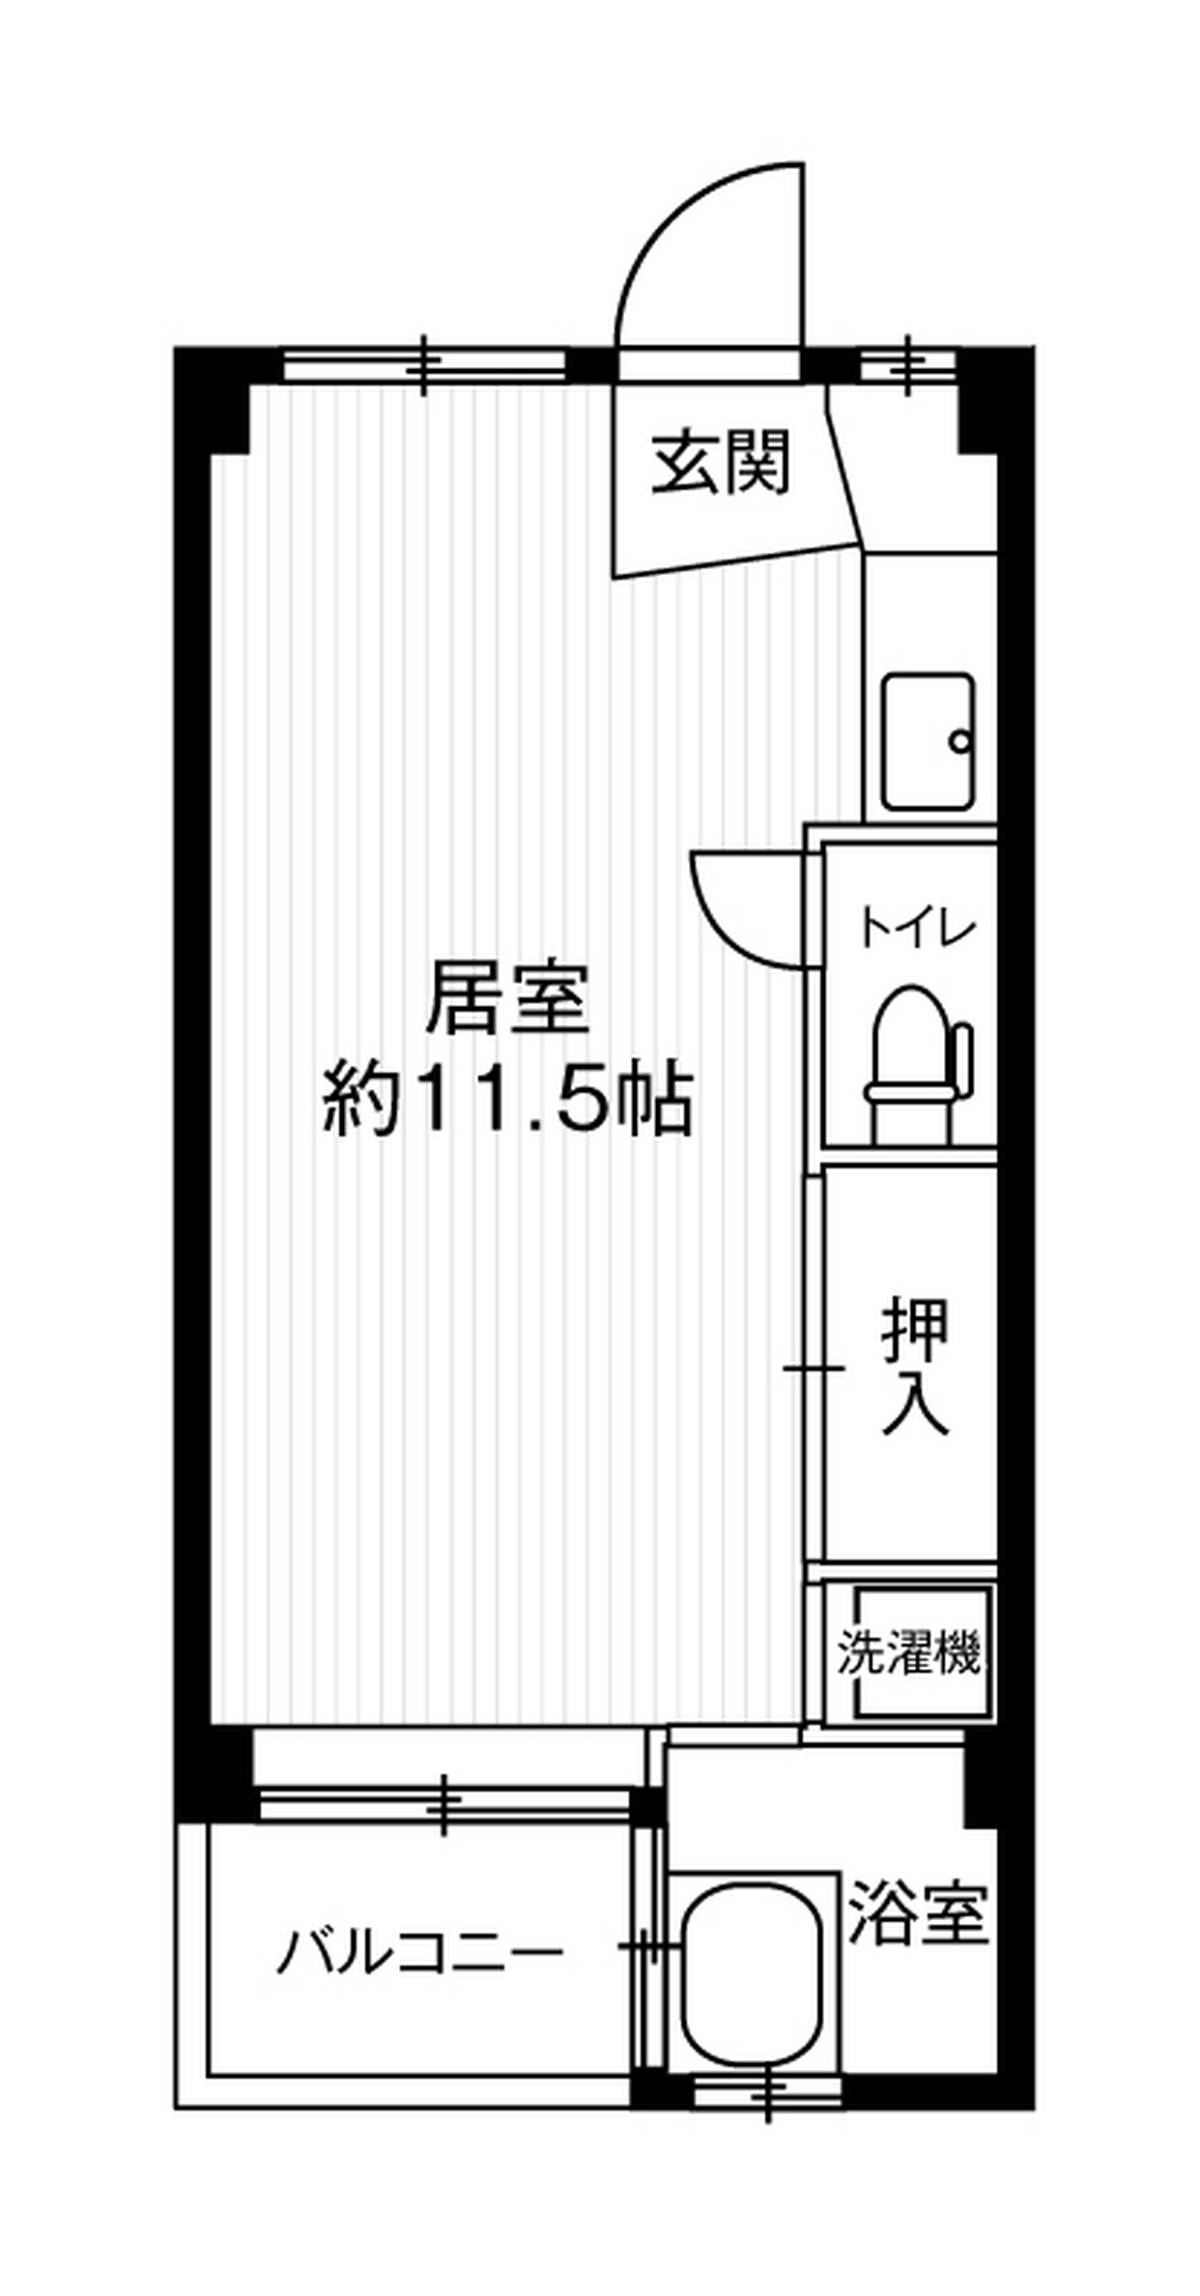 Sơ đồ phòng 1R của Village House Kuzunoha ở Izumi-shi